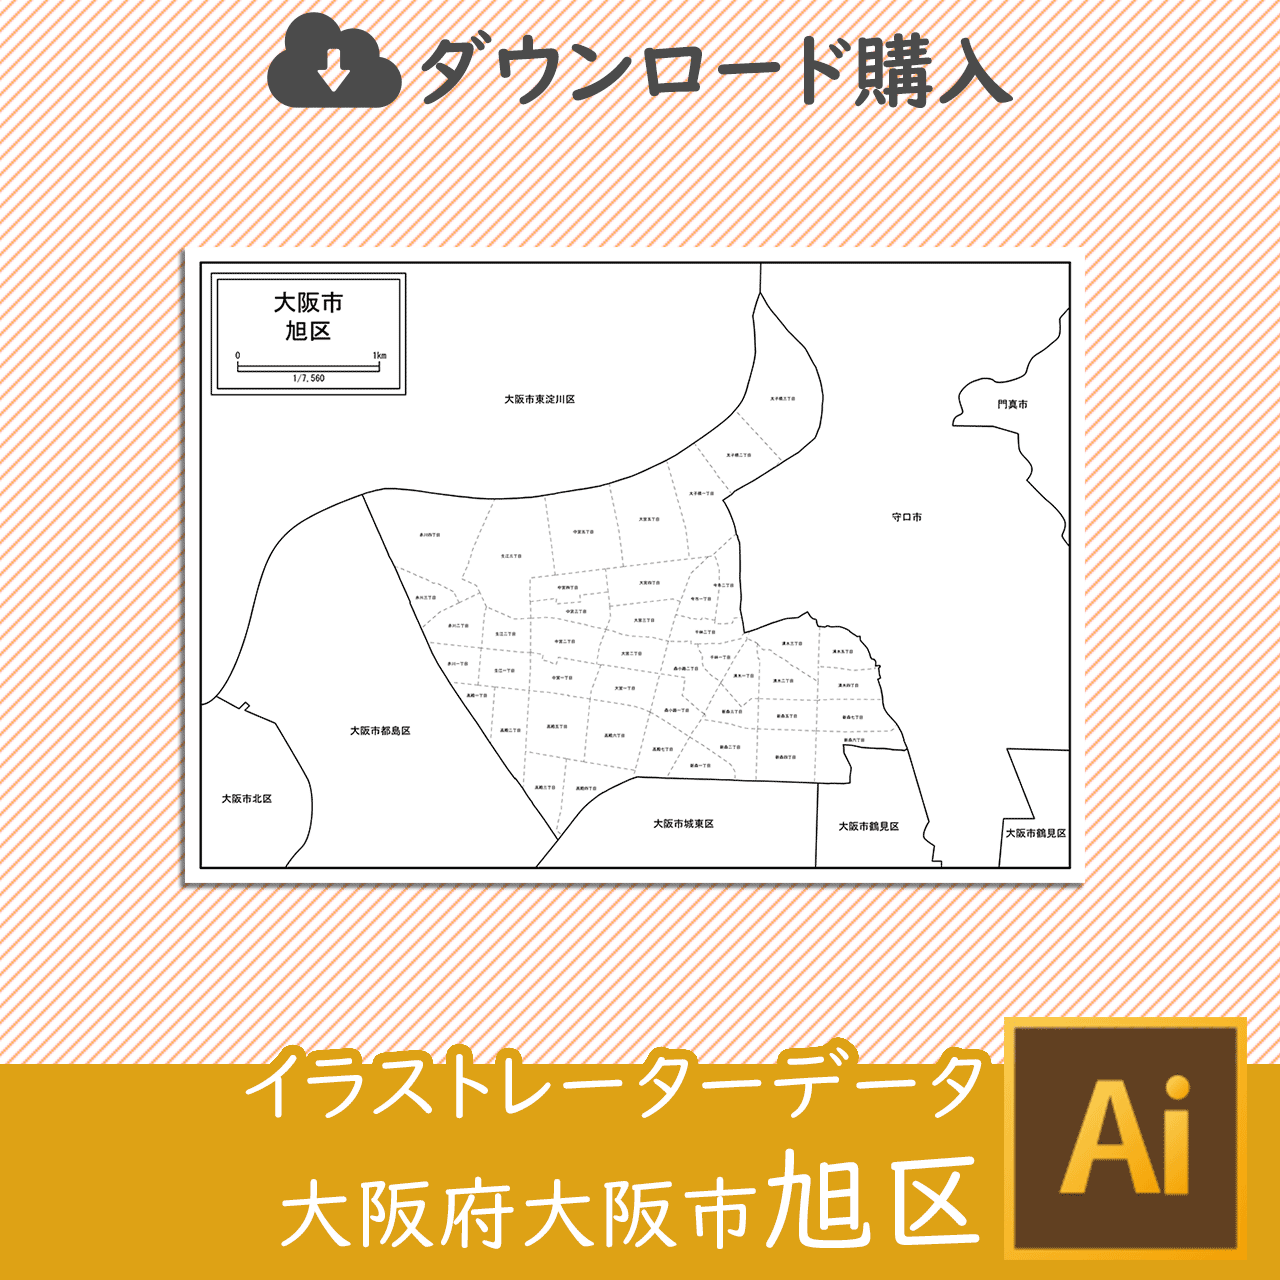 大阪市旭区の白地図のサムネイル画像